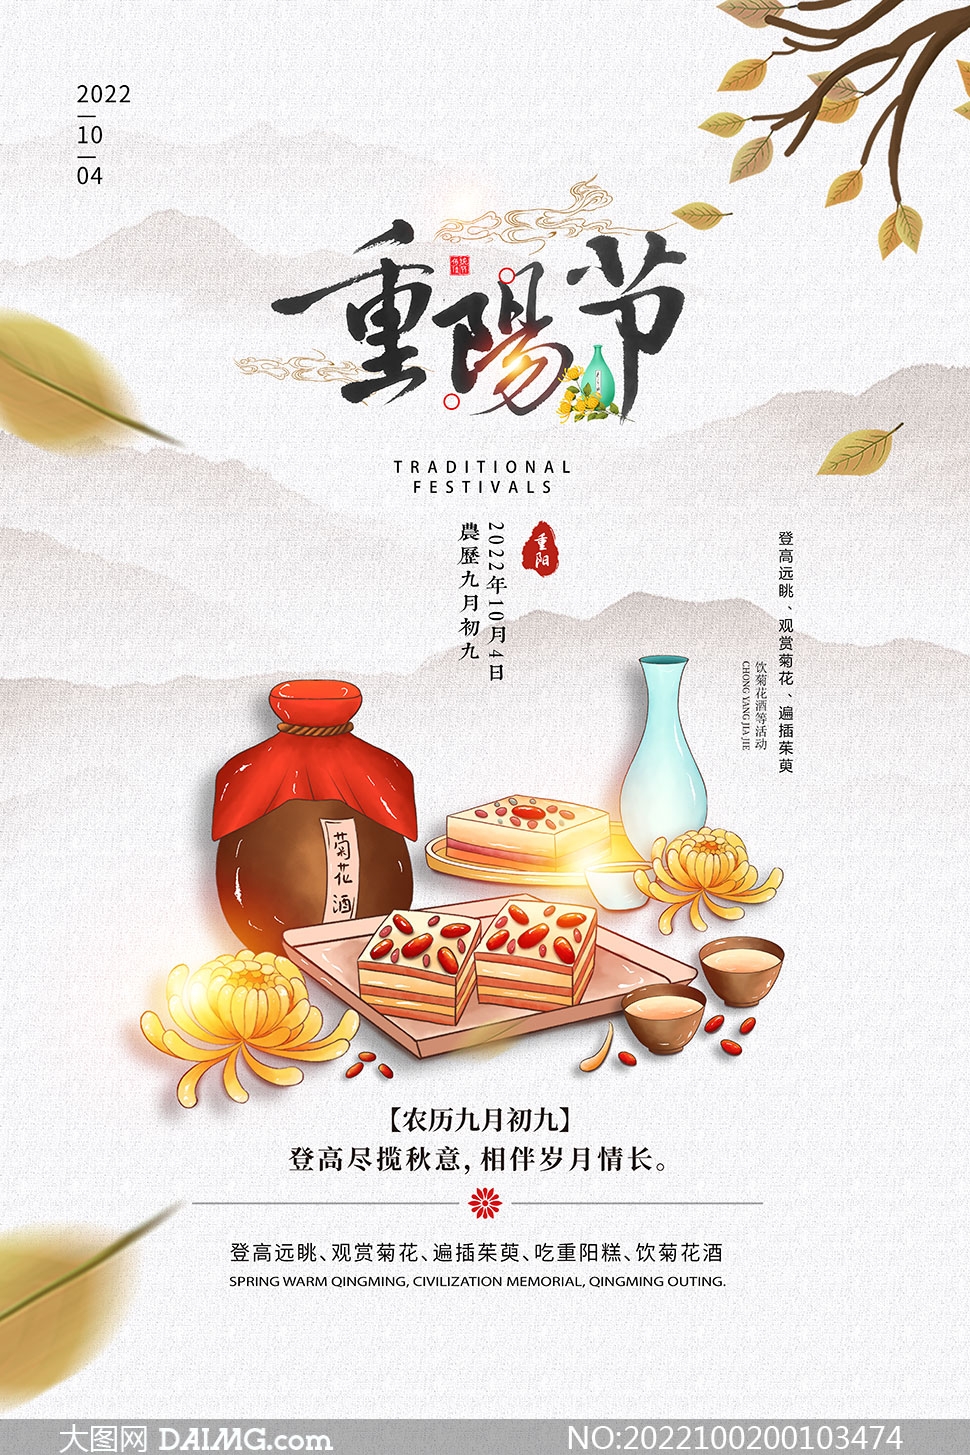 中國風大氣重陽節宣傳海報設計PSD素材